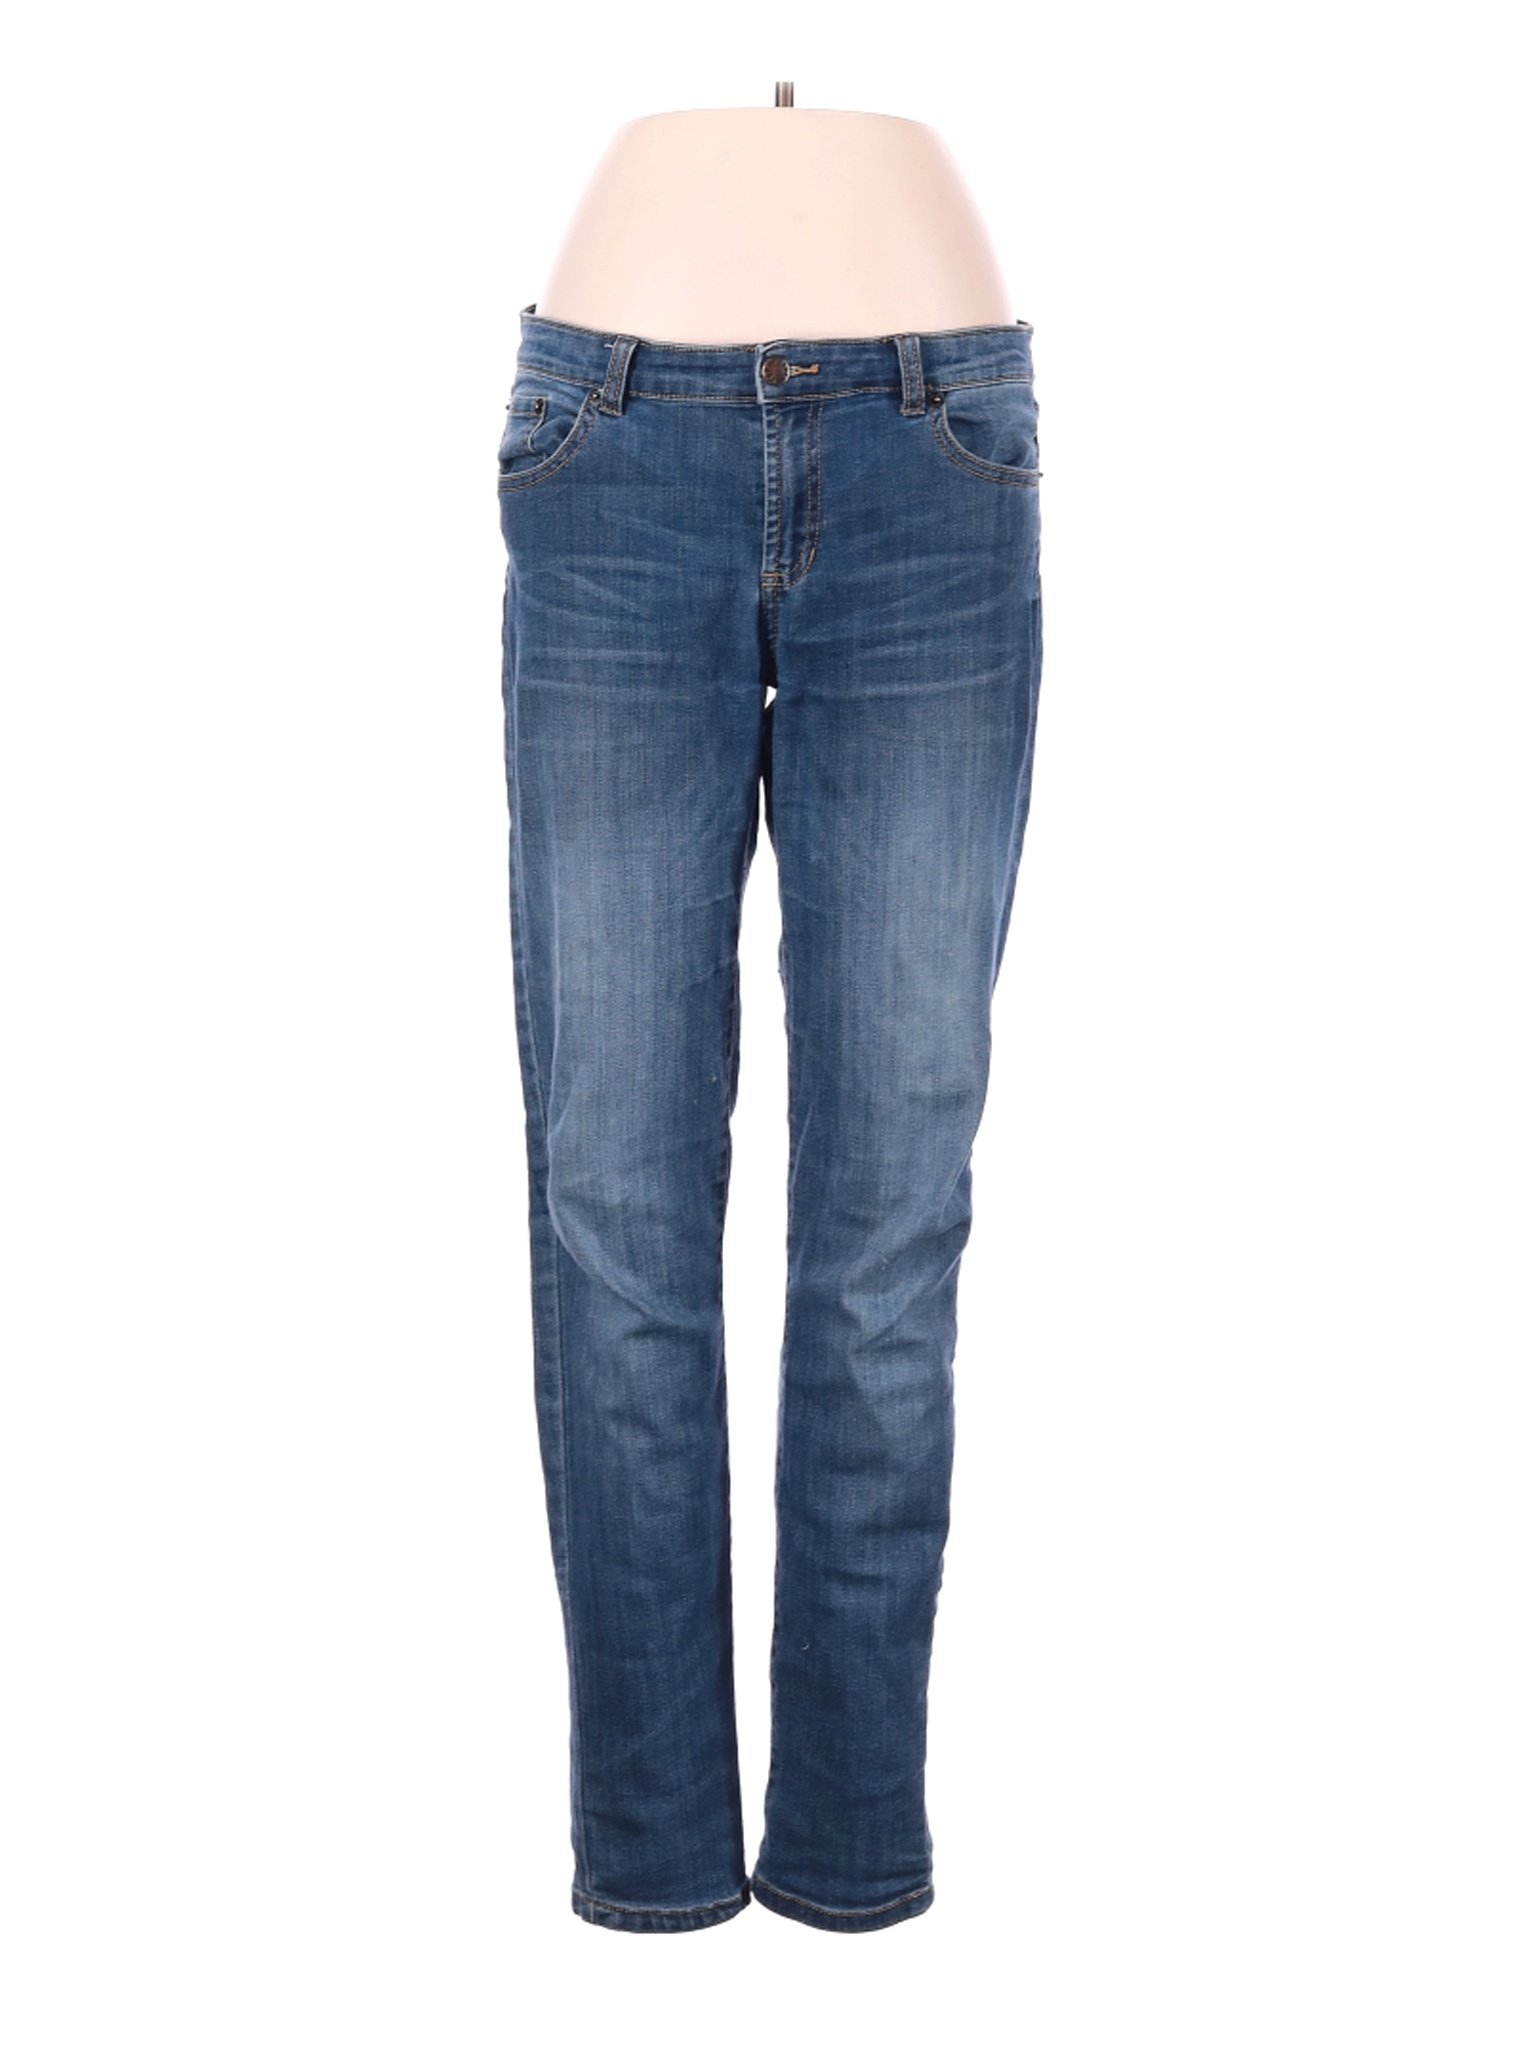 Joe Fresh Women Blue Jeans 8 | eBay